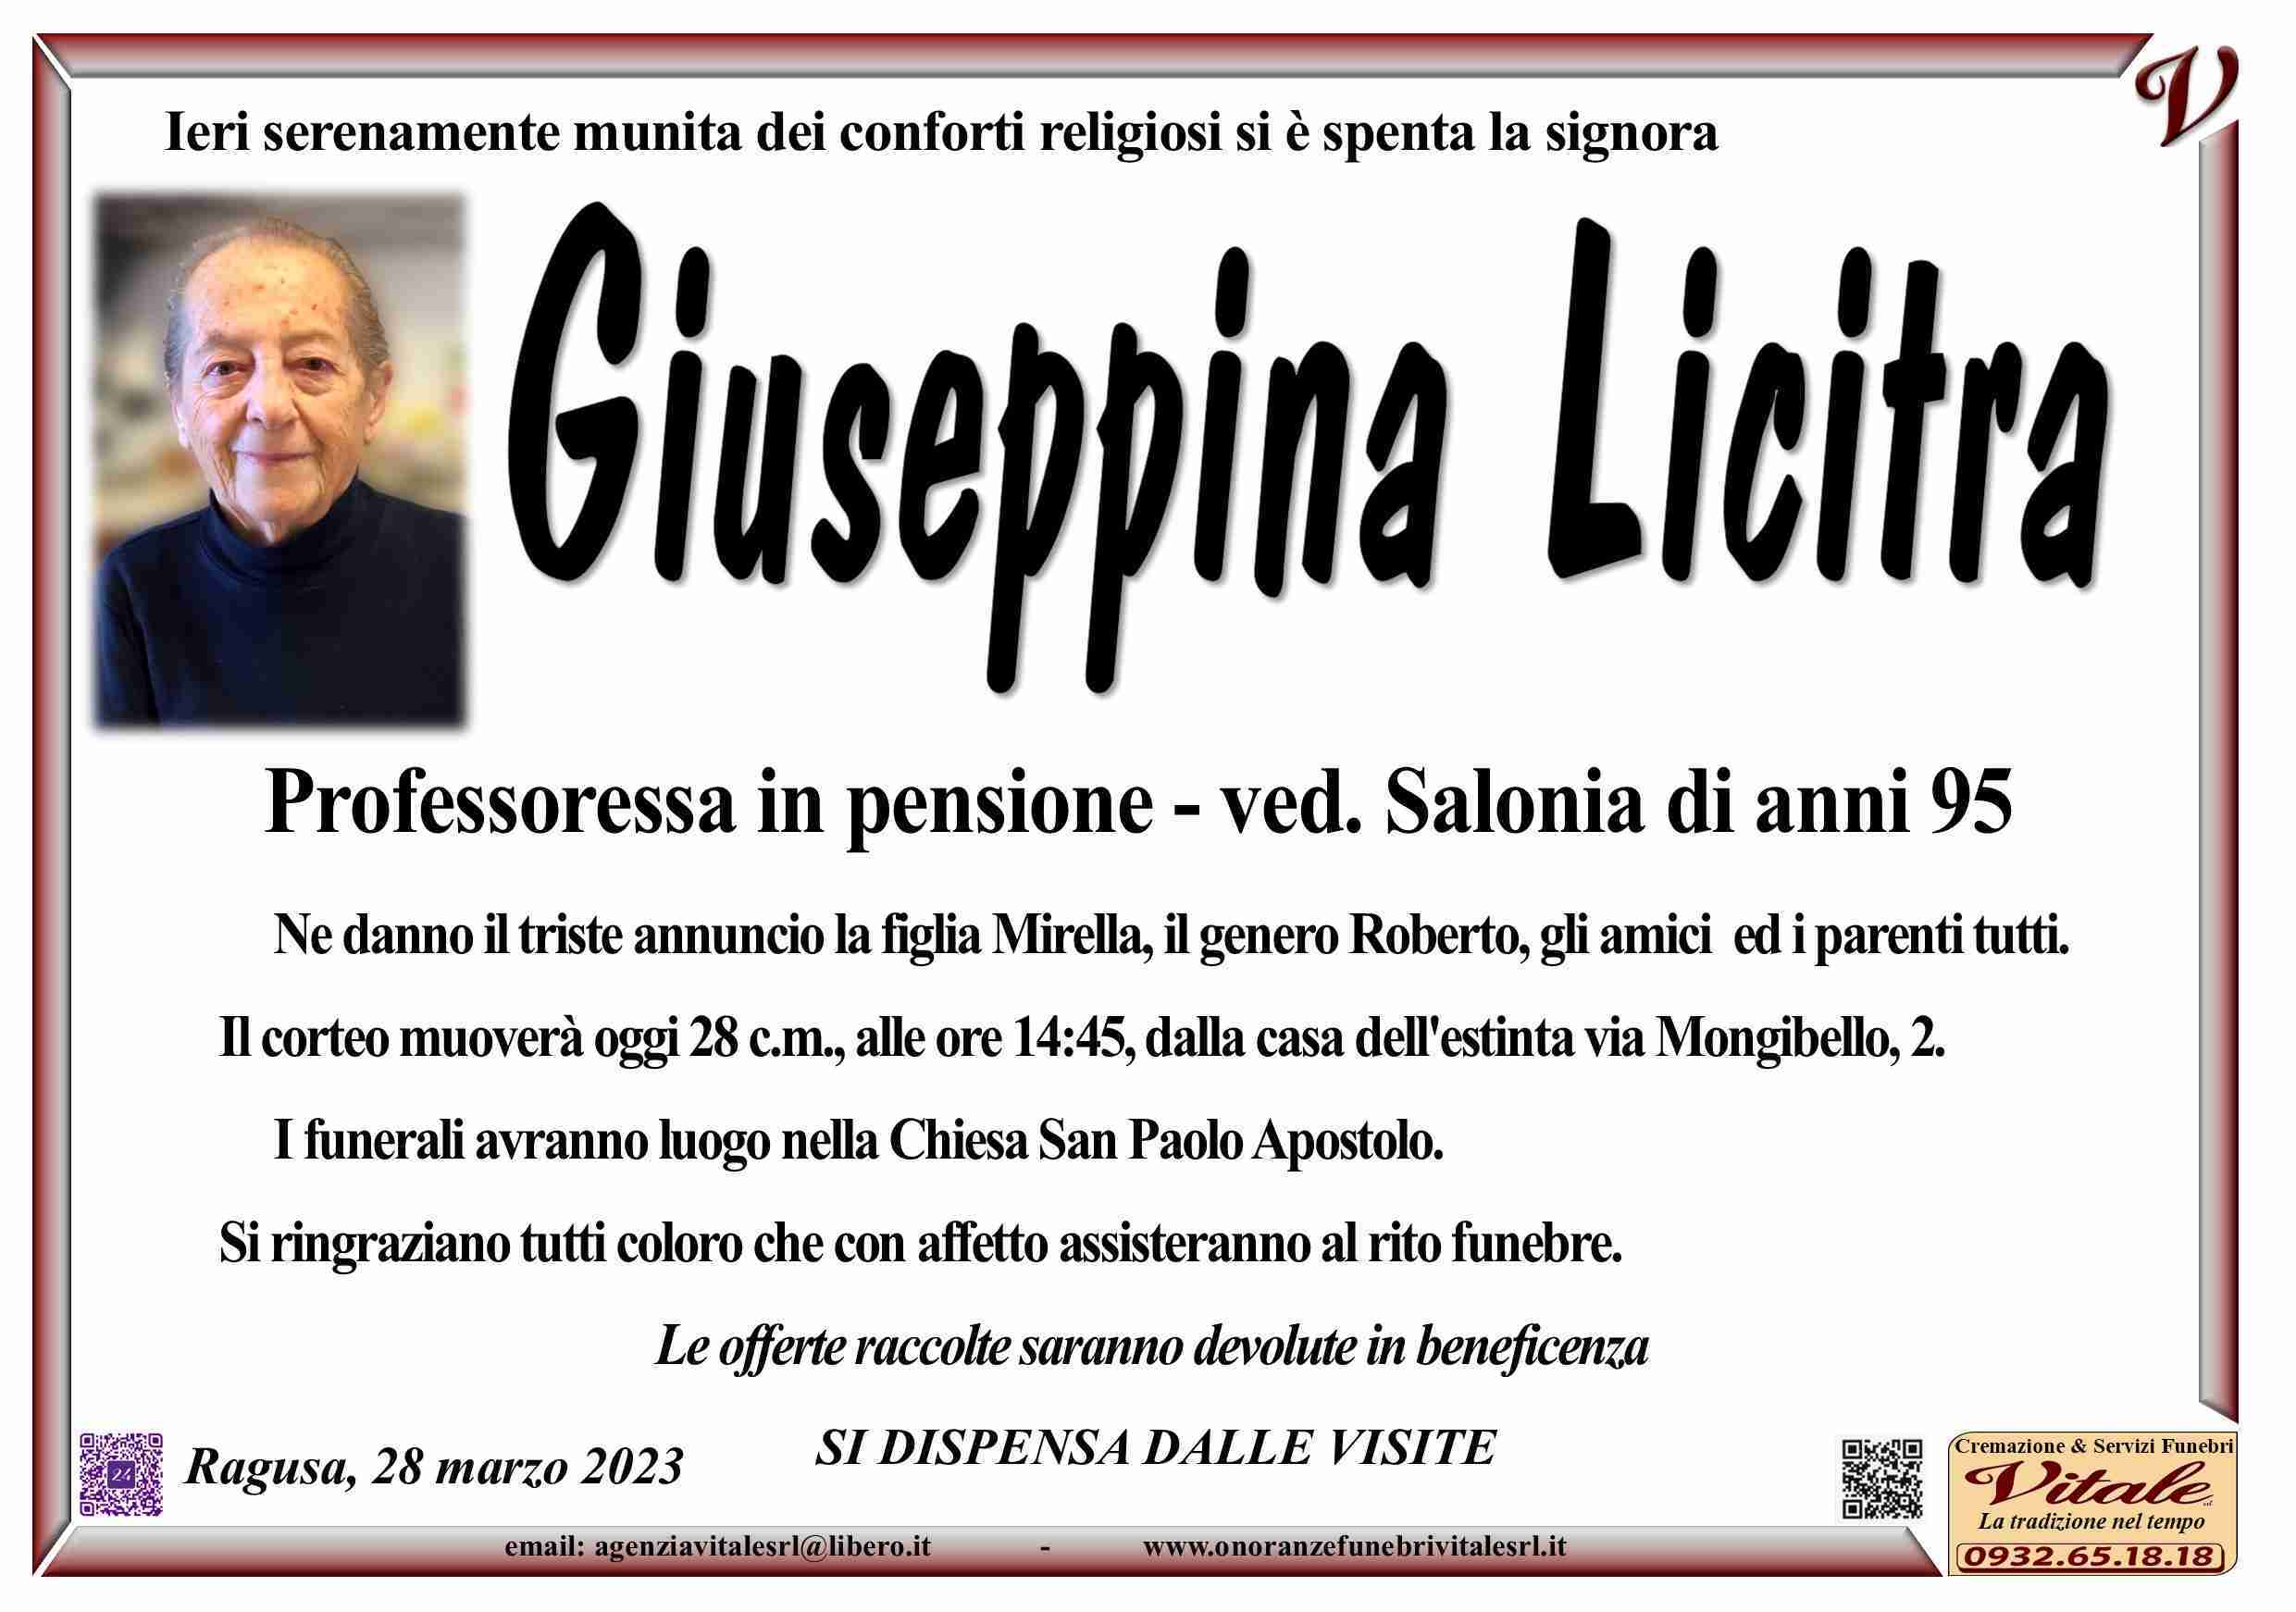 Giuseppina Licitra